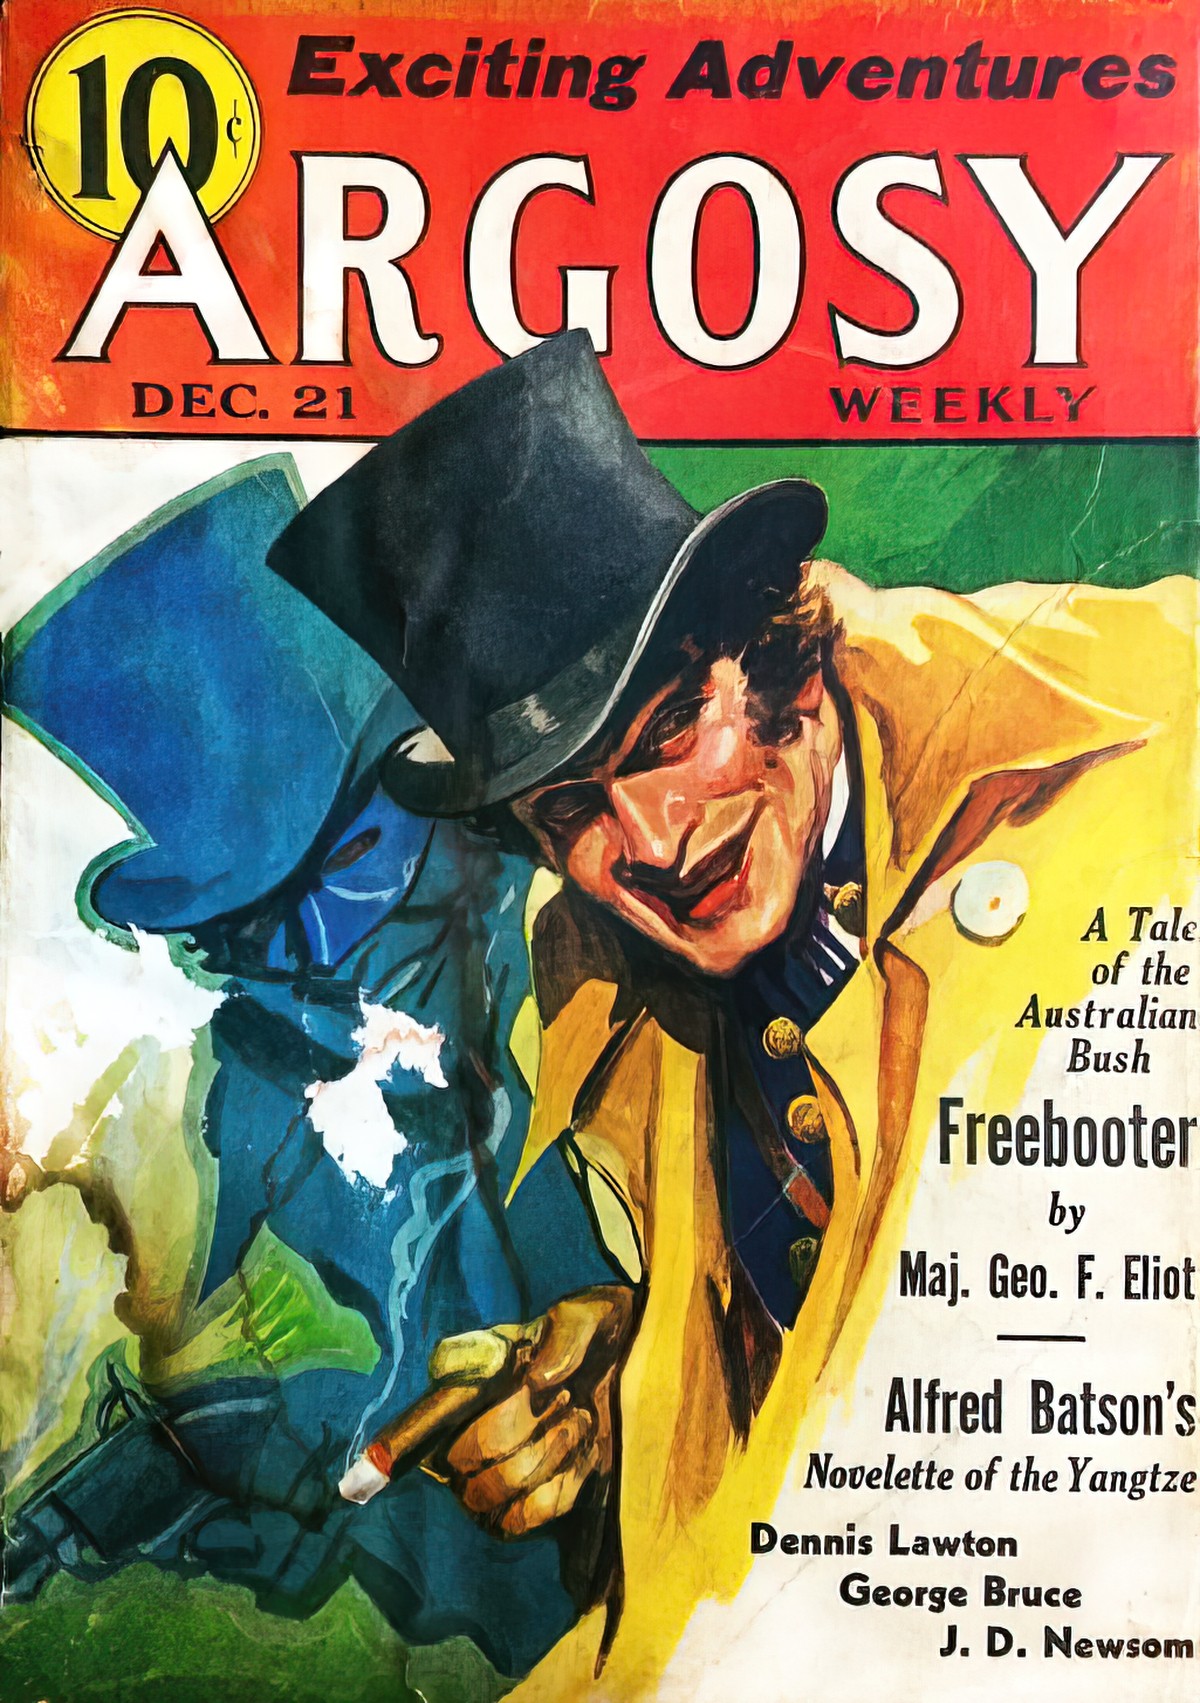 1935 Dec 21 ARGOSY WEEKLY Pulp Fiction